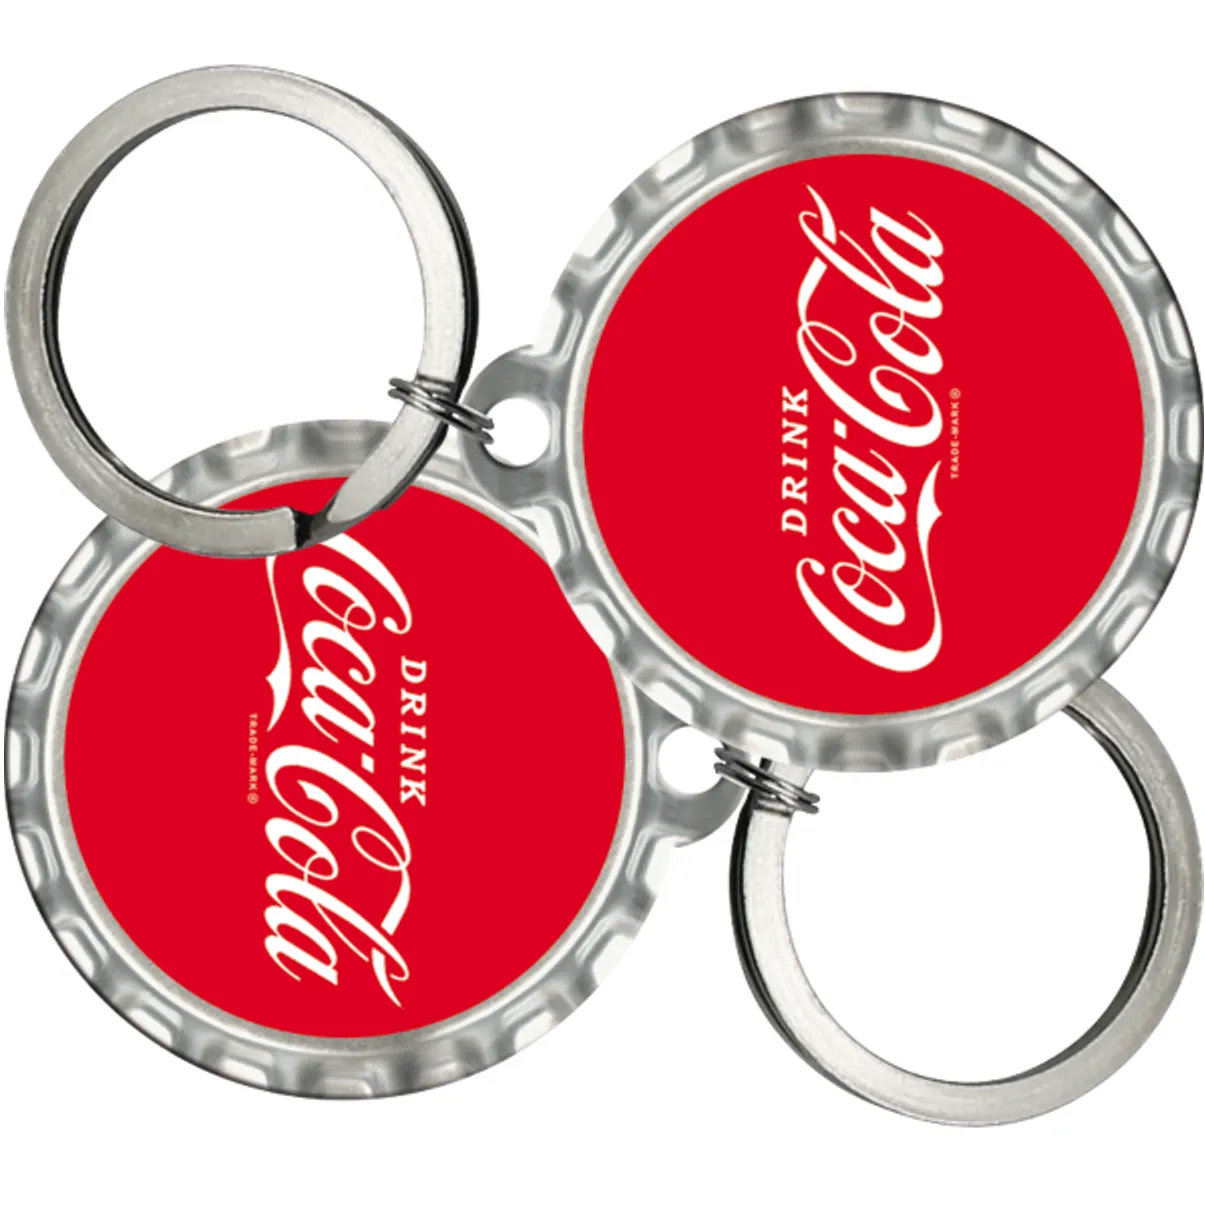 Free Coca-Cola Keychain